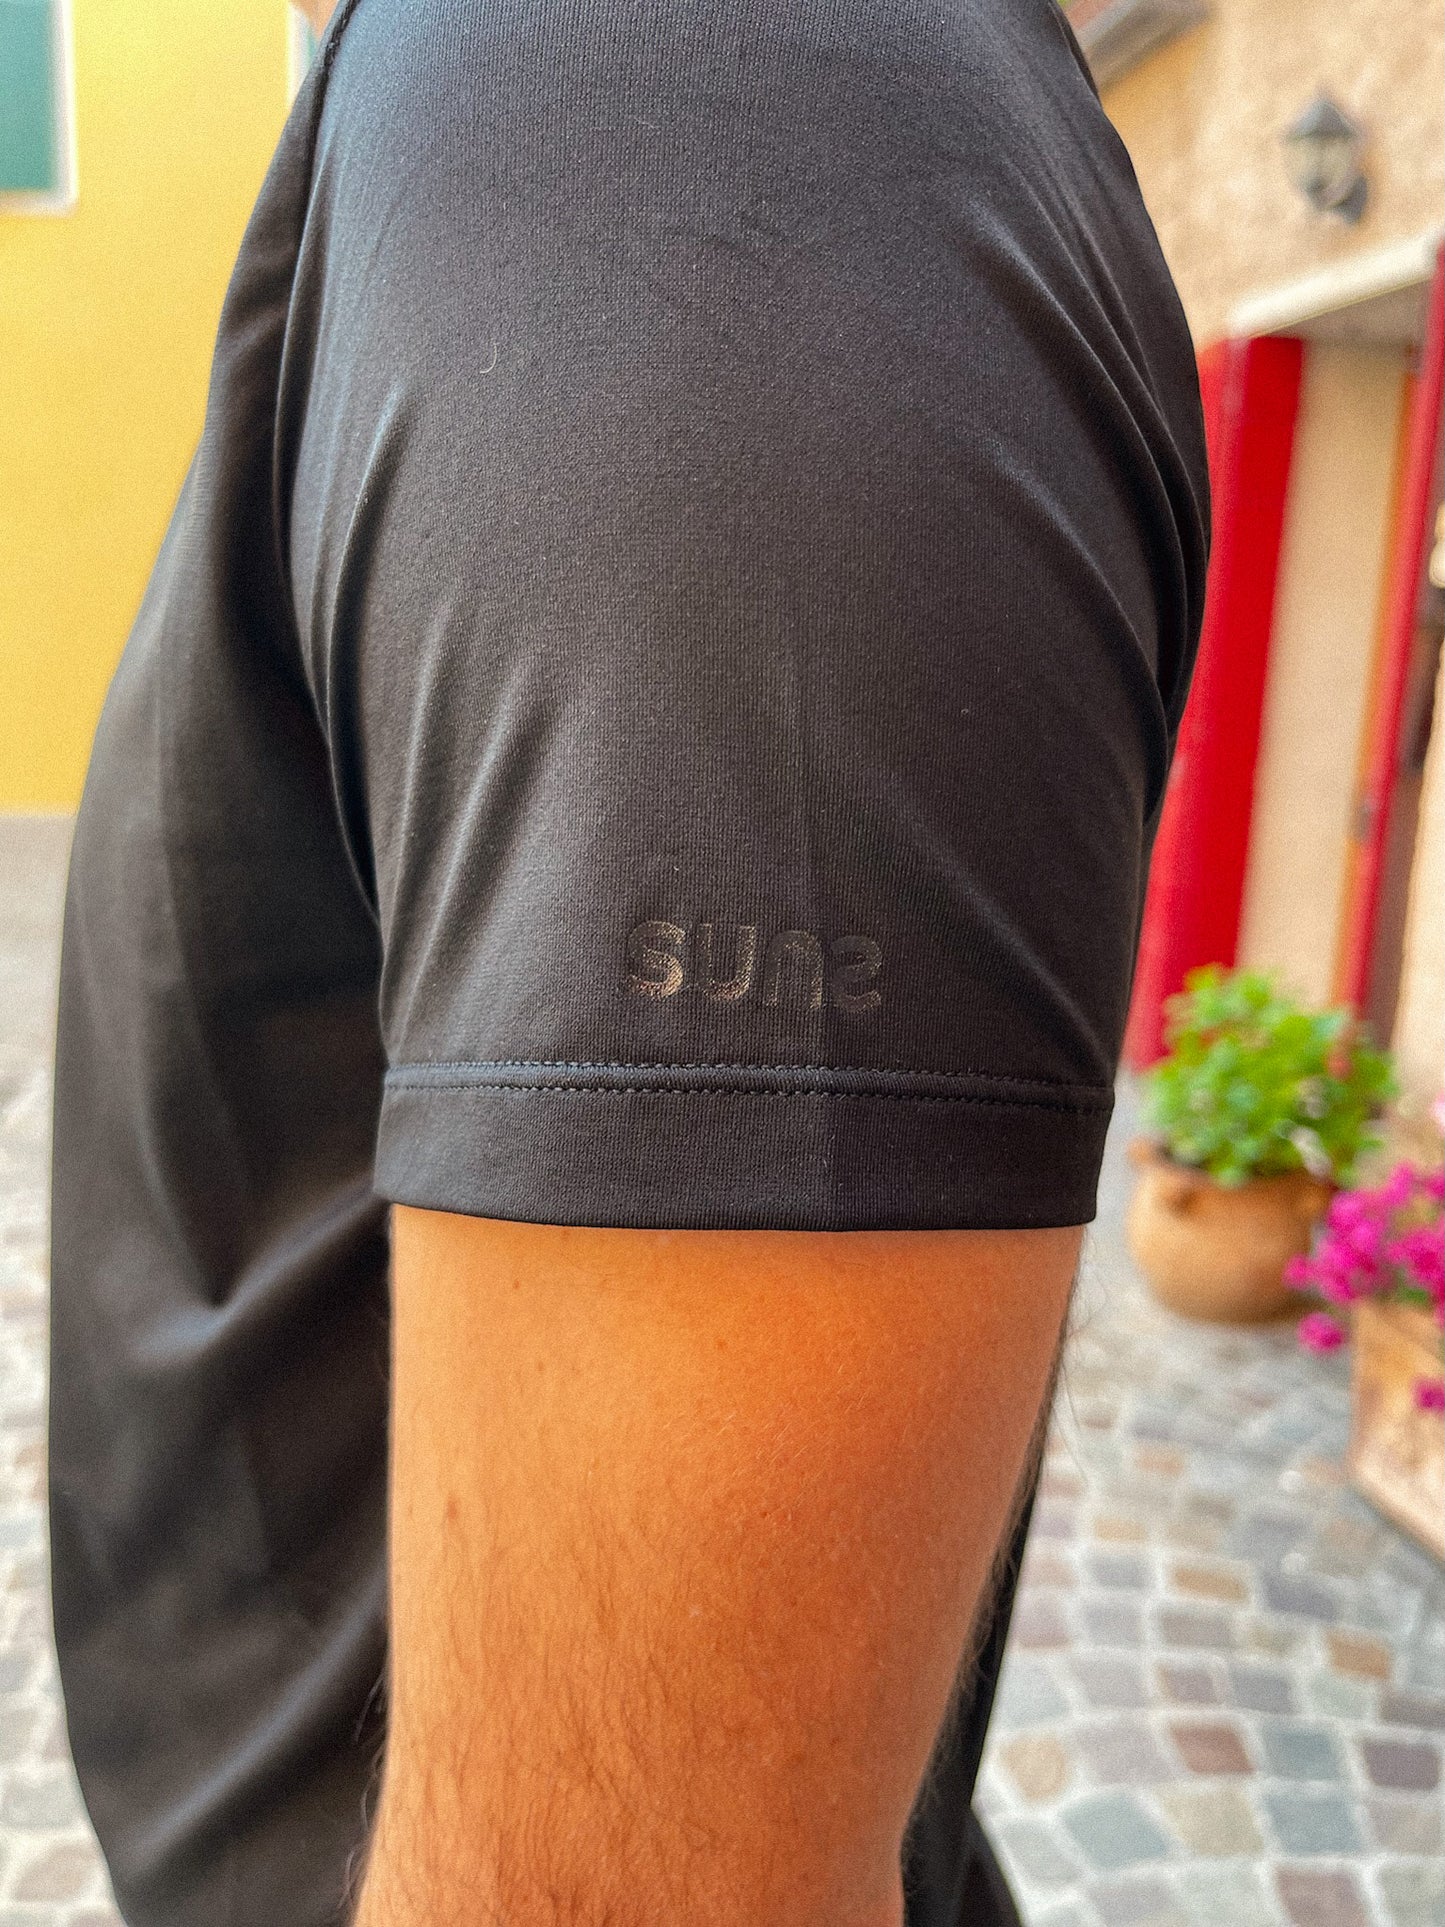 Suns Paolo Lux Black Men's T-Shirt